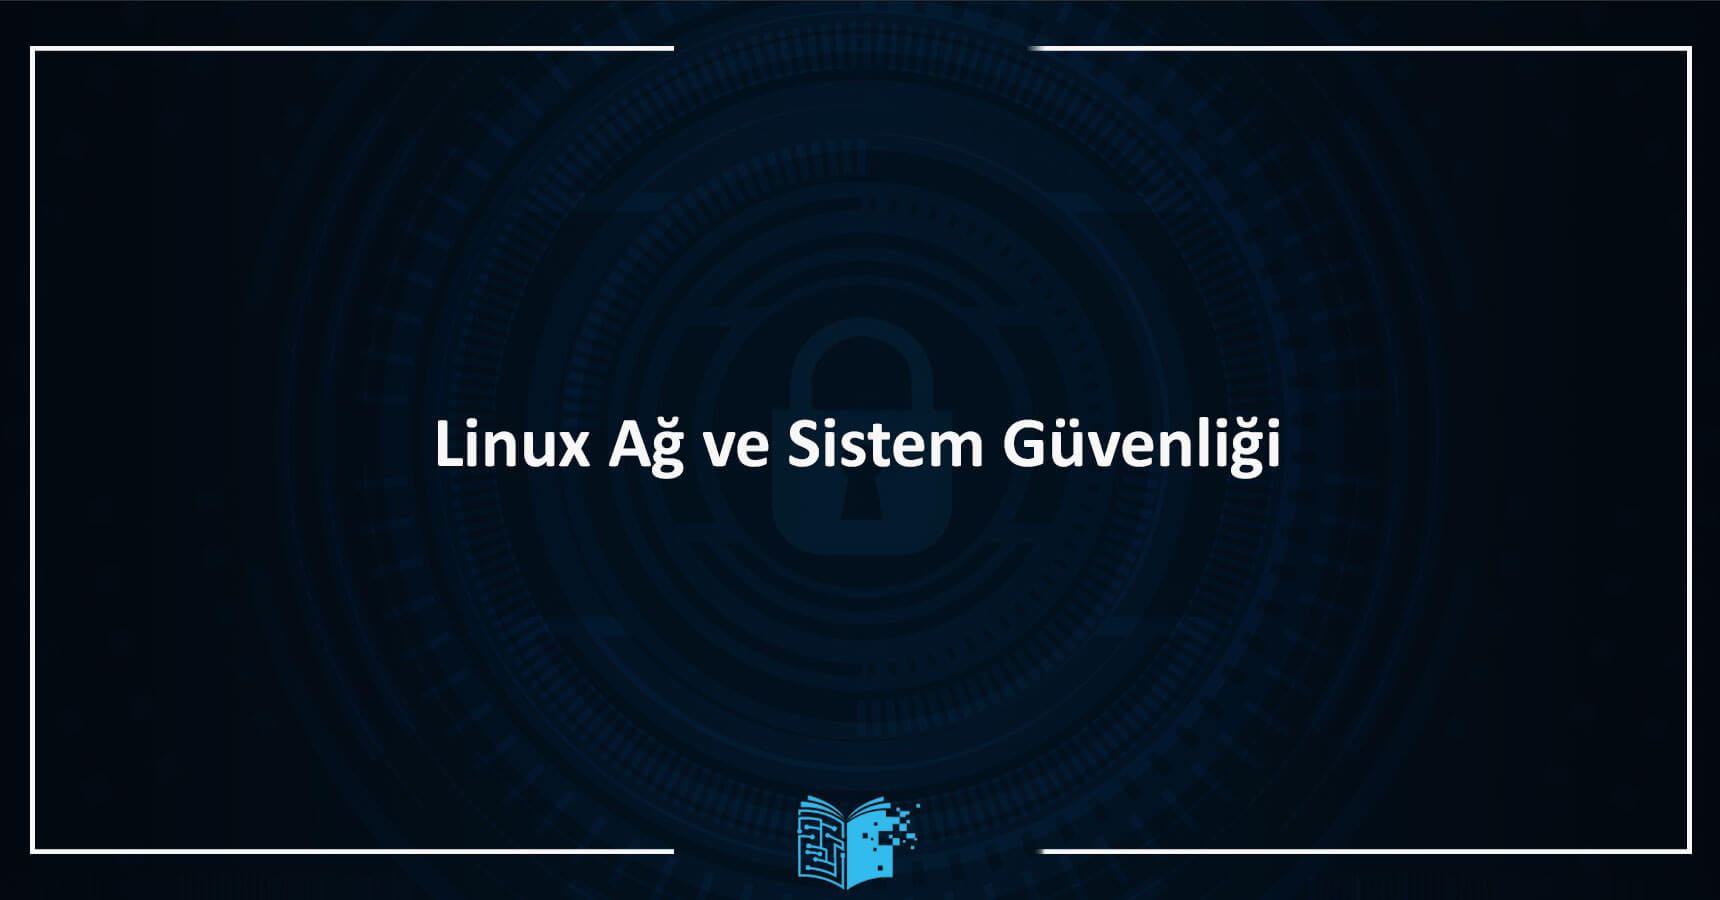 Linux Ağ ve Sistem Güvenliği Eğitimi